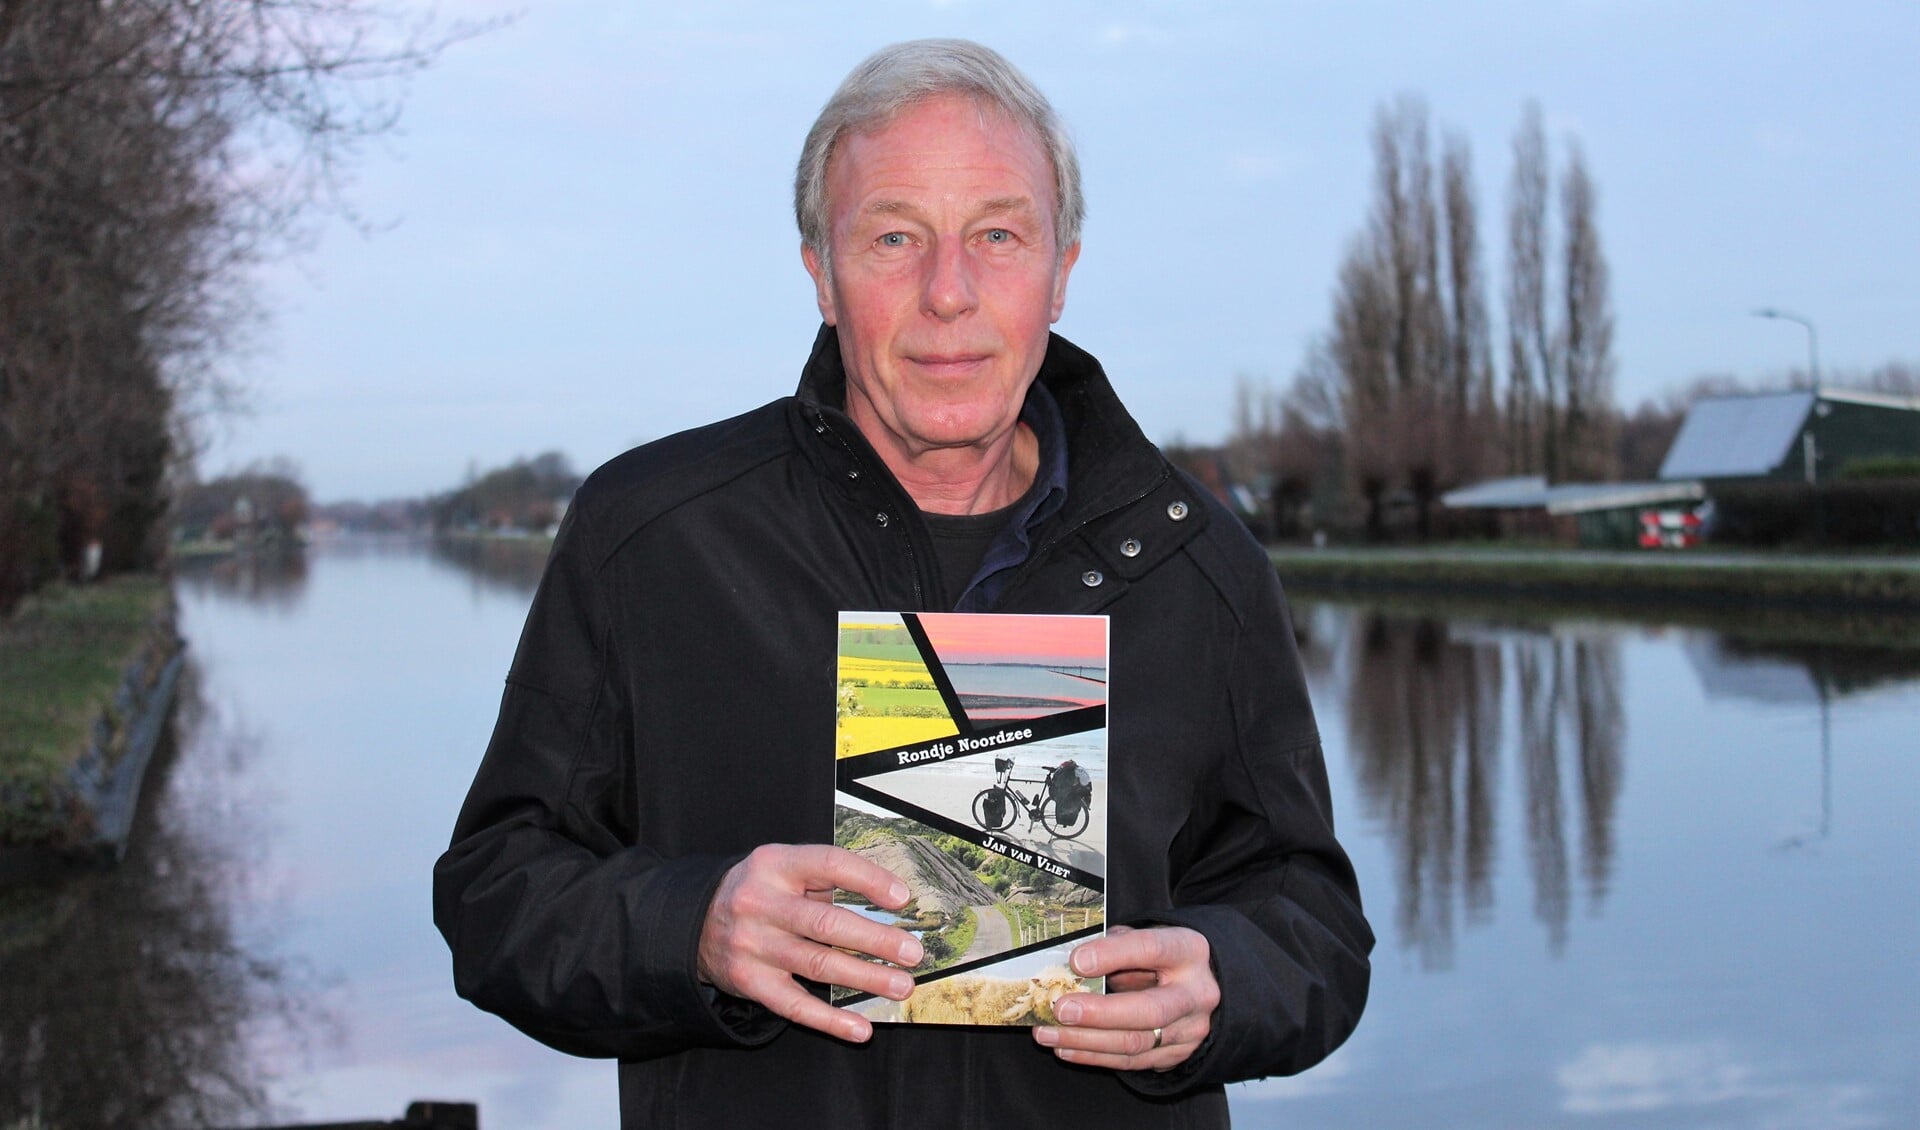 Jan van Vliet met zijn boek 'Rondje Noordzee' (foto/tekst: Dick Janssen).